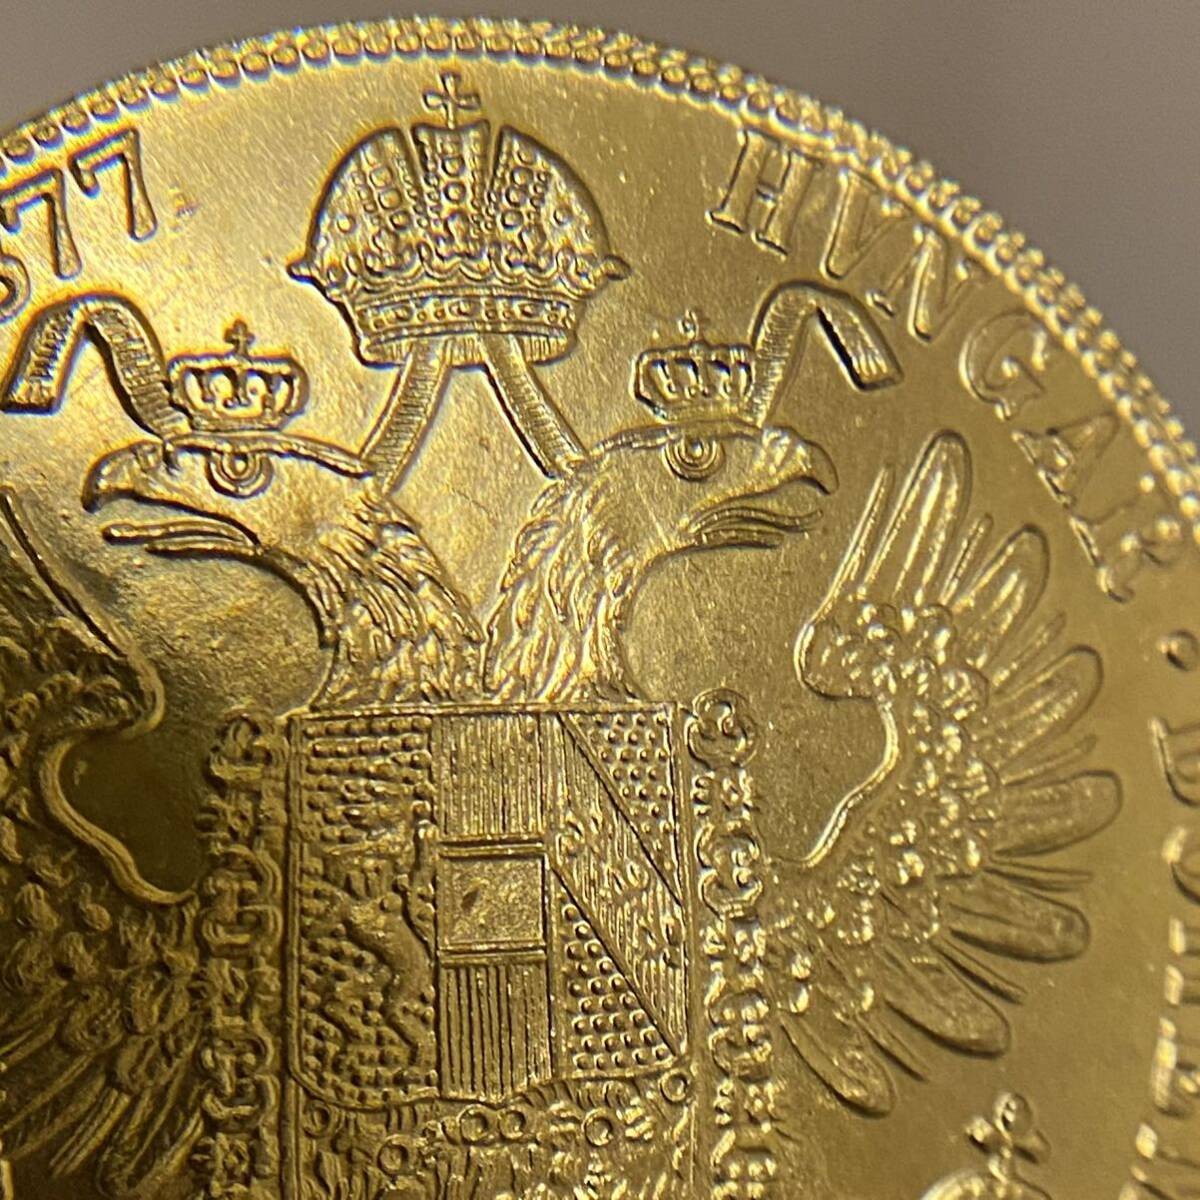 金貨 オーストリア帝国 硬貨 古銭 約14.71g フランツ・ヨーゼフ 1 世 1877年 クラウン 国章 紋章 双頭の鷲 4ダカット コイン 海外硬貨 の画像5